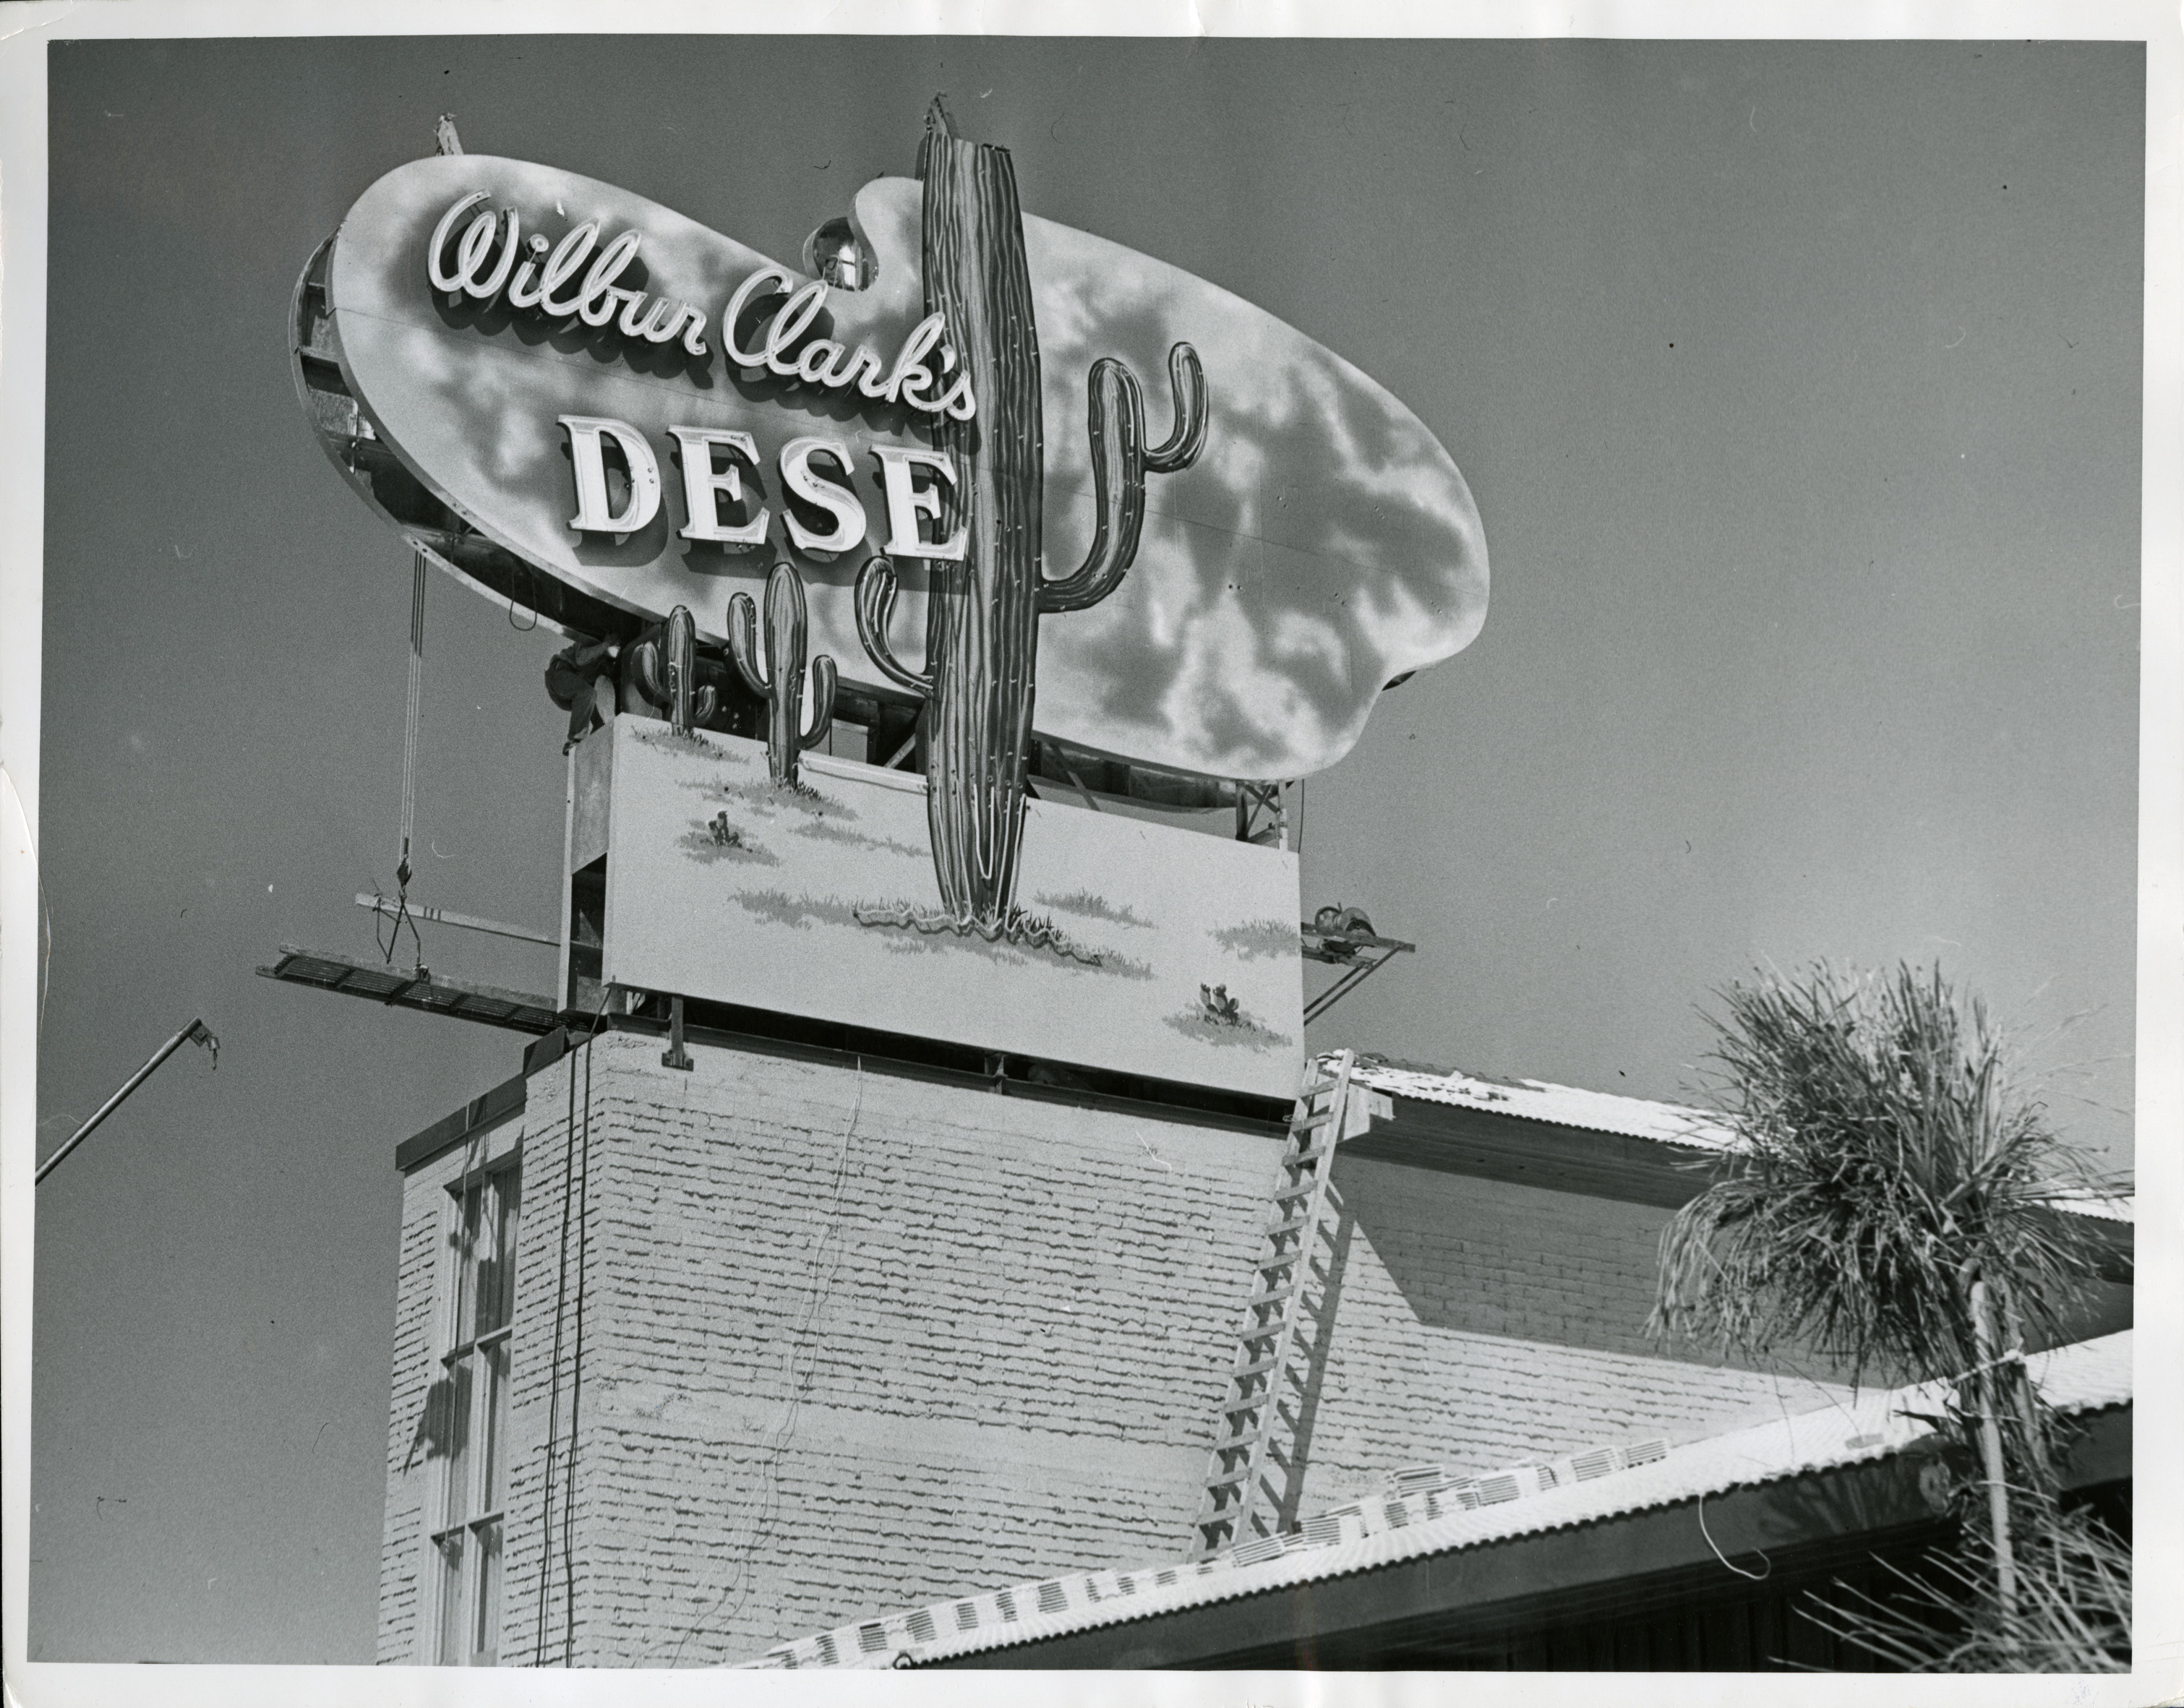 Photograph of the sign for Wilbur Clark's Desert Inn during assembly (Las Vegas), circa 1950s